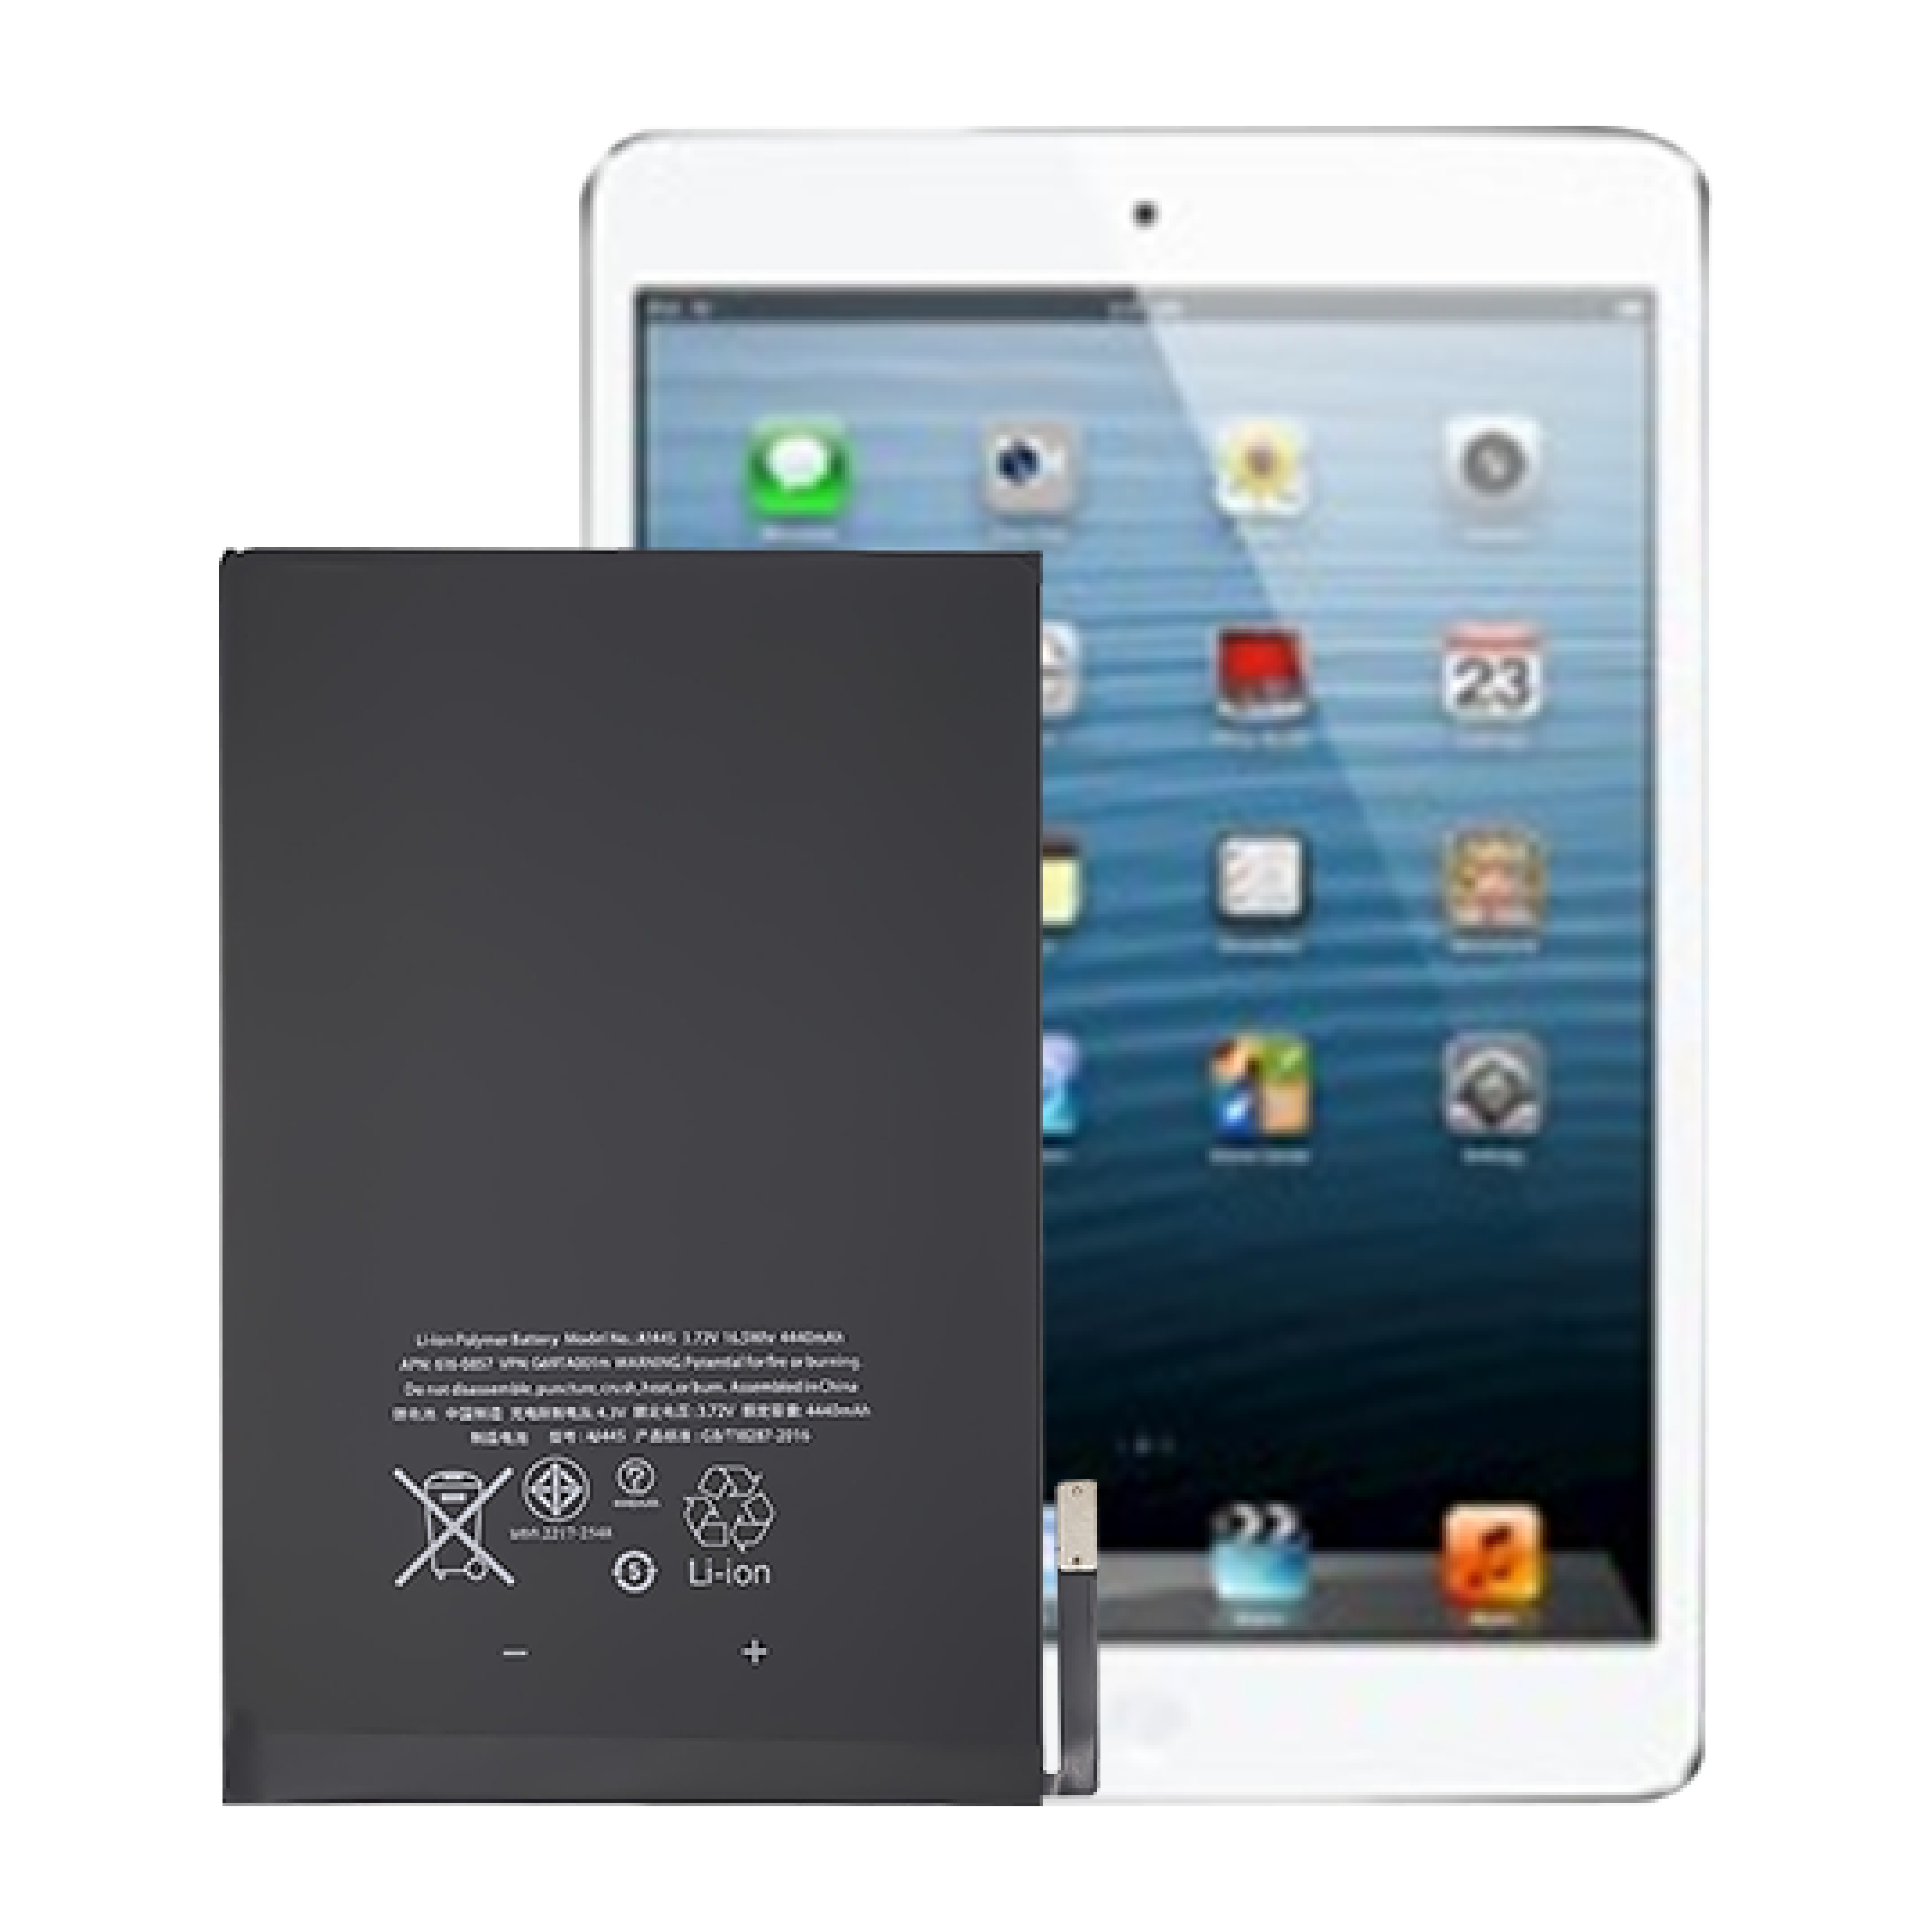 Batería interna de tableta de 0 ciclos OEM de alta calidad para batería de Apple iPad mini1